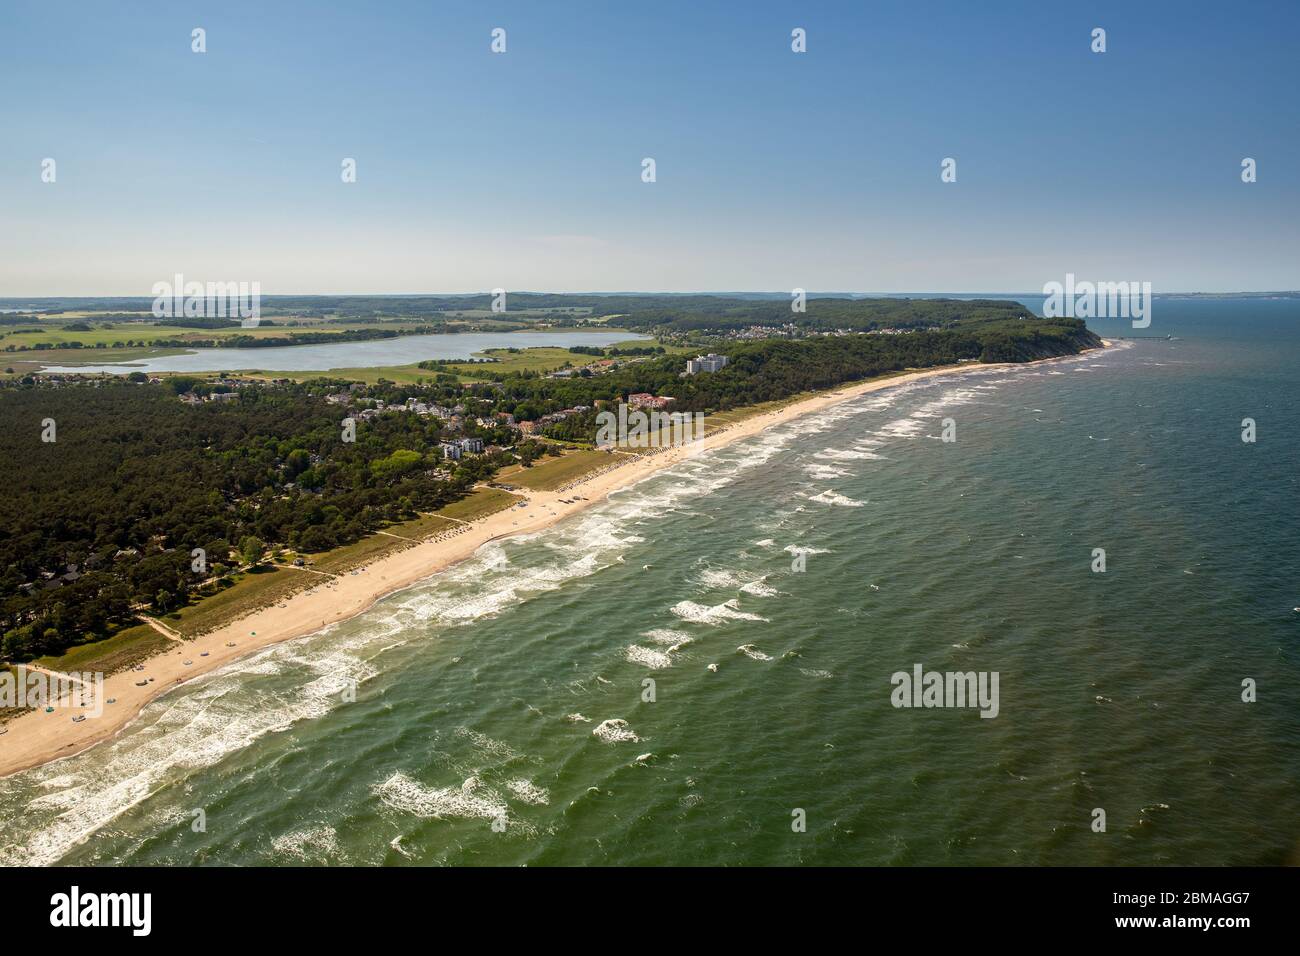 , paysage côtier à Sellin, 05.06.2016, vue aérienne, Allemagne, Mecklenburg-Poméranie occidentale, Sellin Banque D'Images